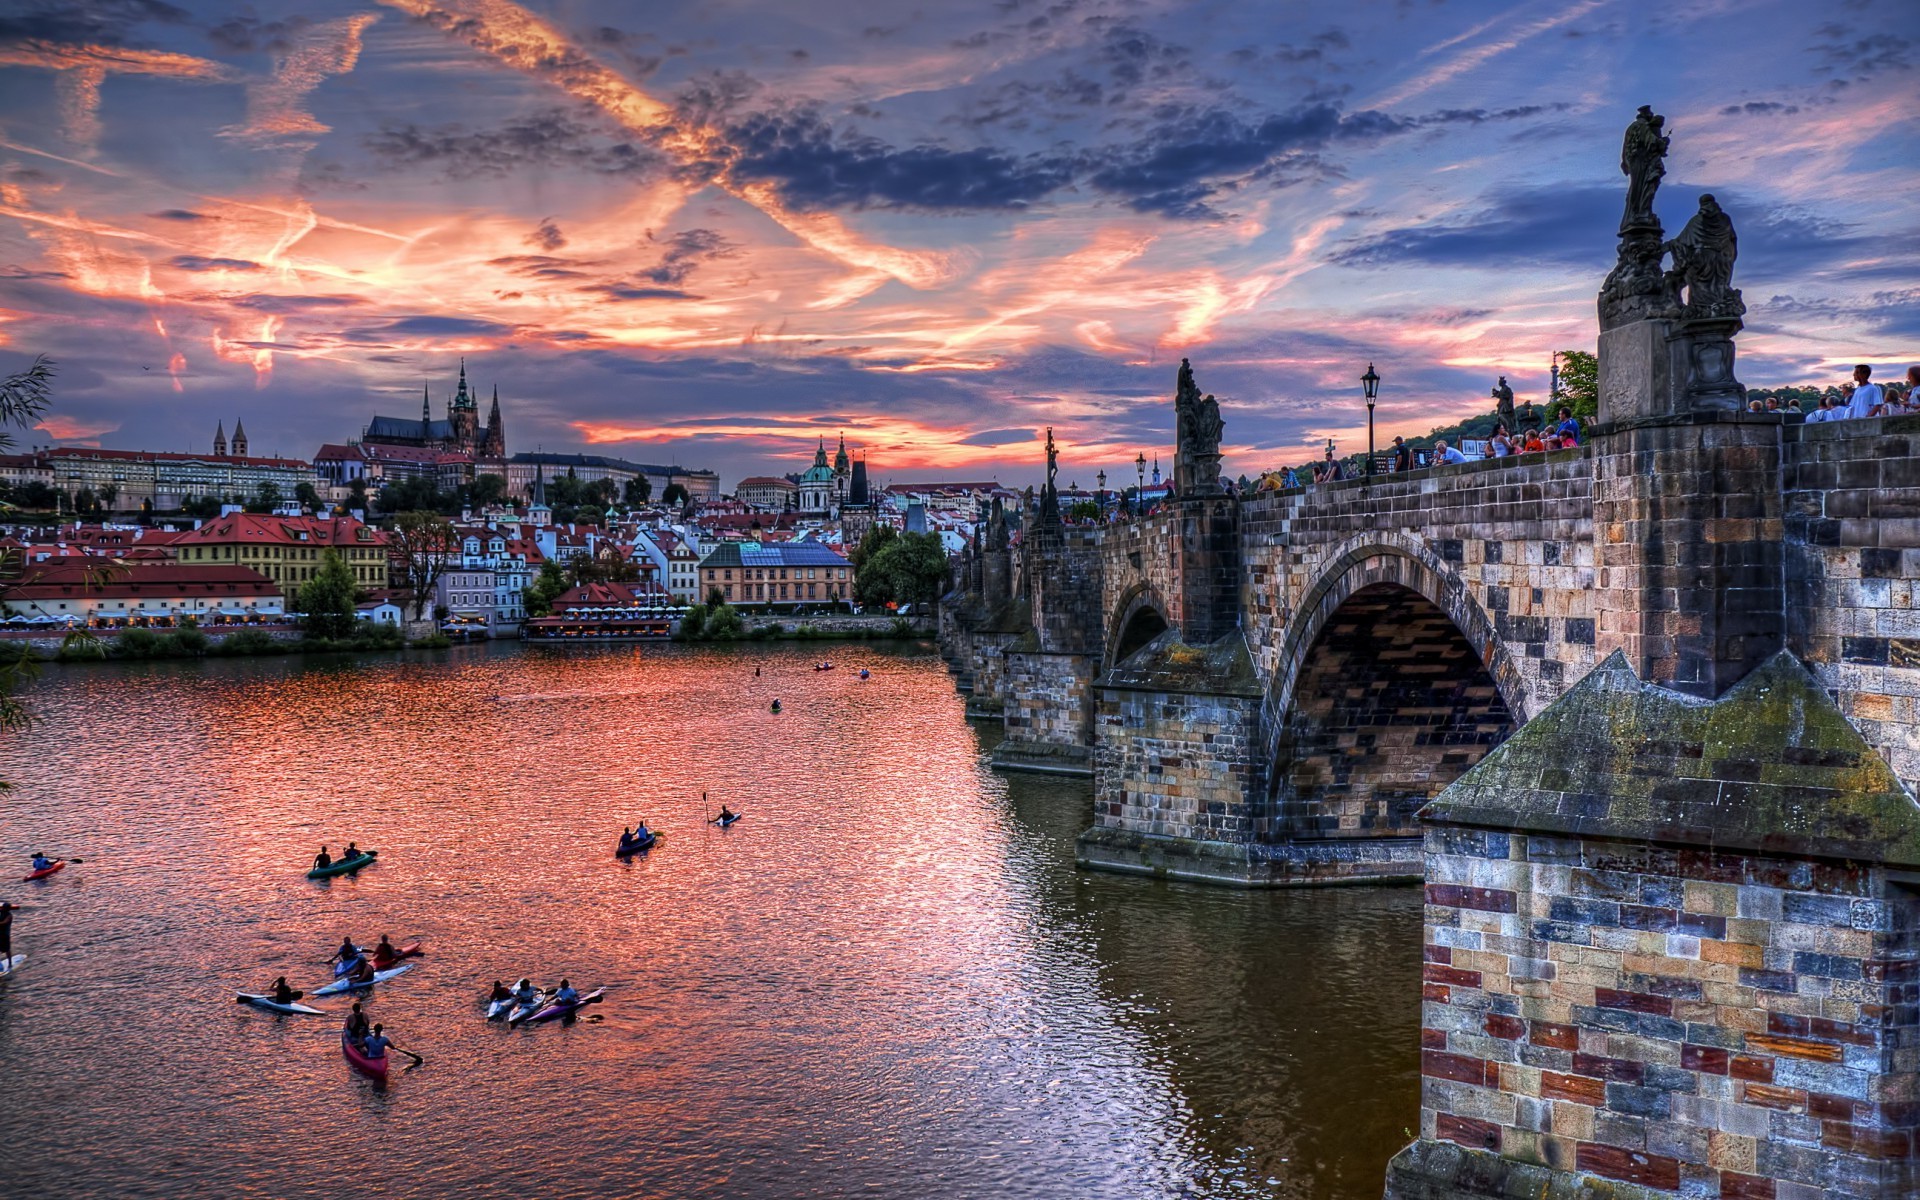 Cityscape Building River Czech Republic Prague Wallpapers Hd Desktop And Mobile Backgrounds